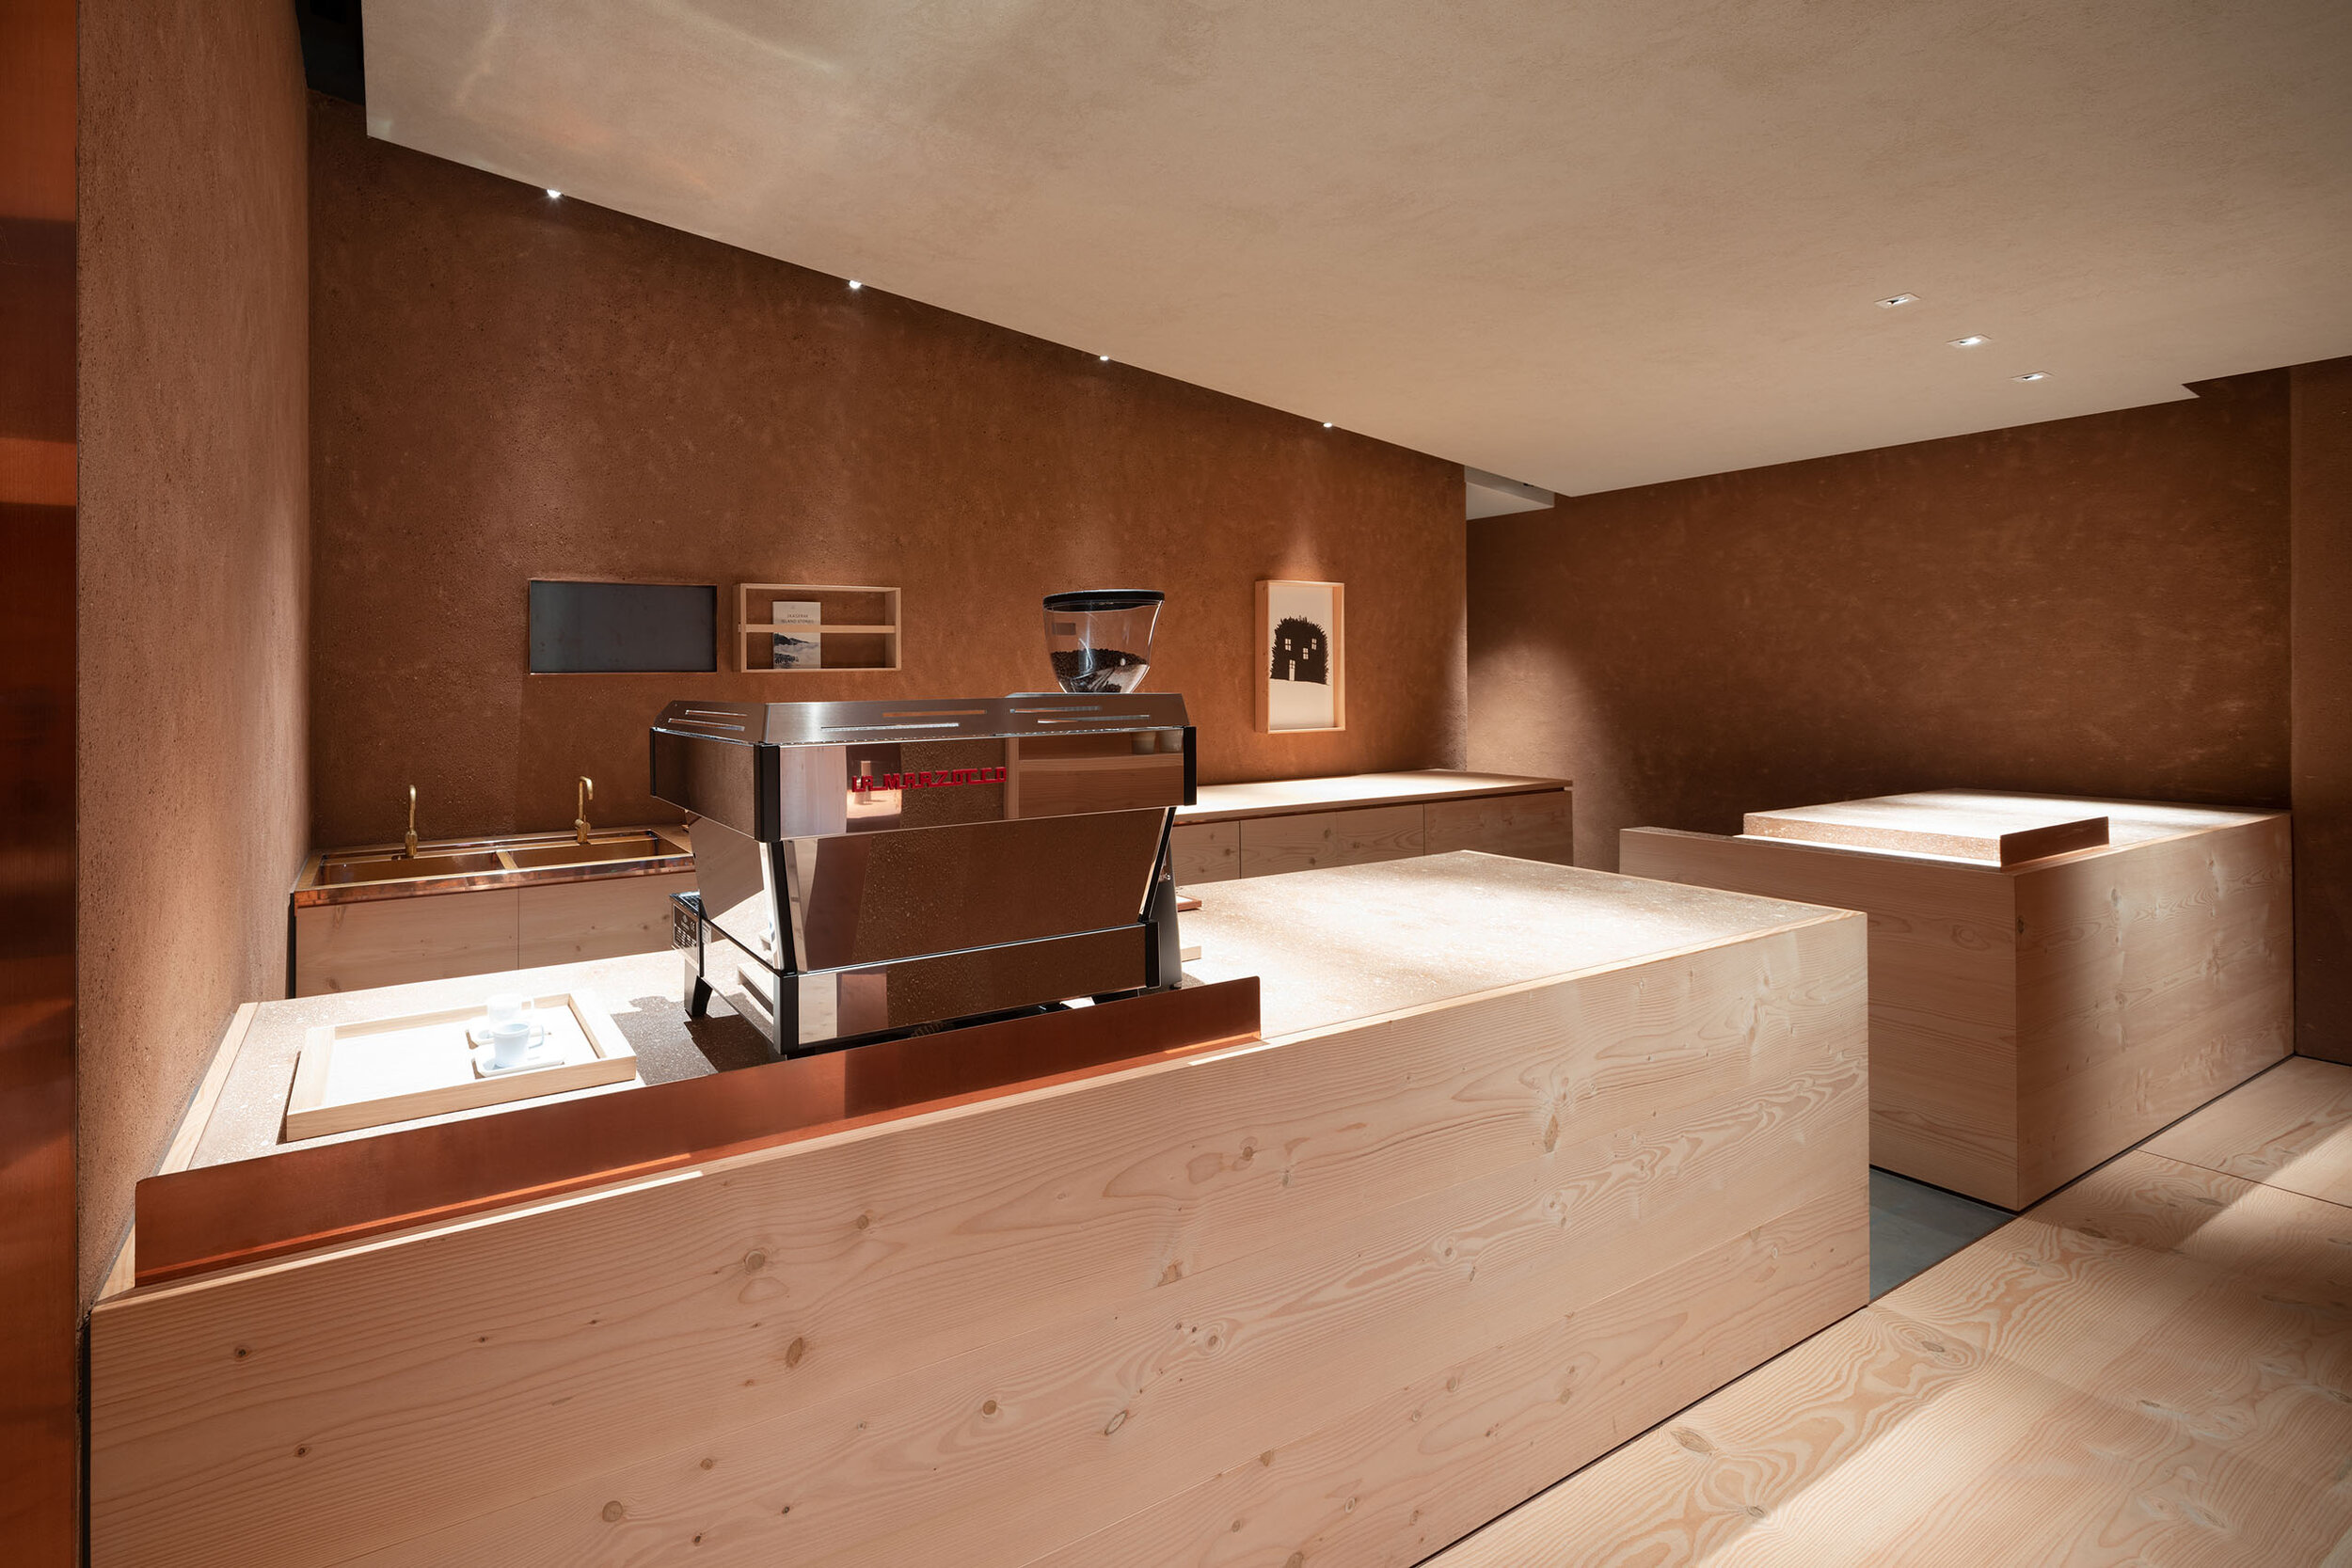  Teruhiro Yanagihara Studio has designed cafe counter for 1616/arita japan showroom in Arita, Japan. 